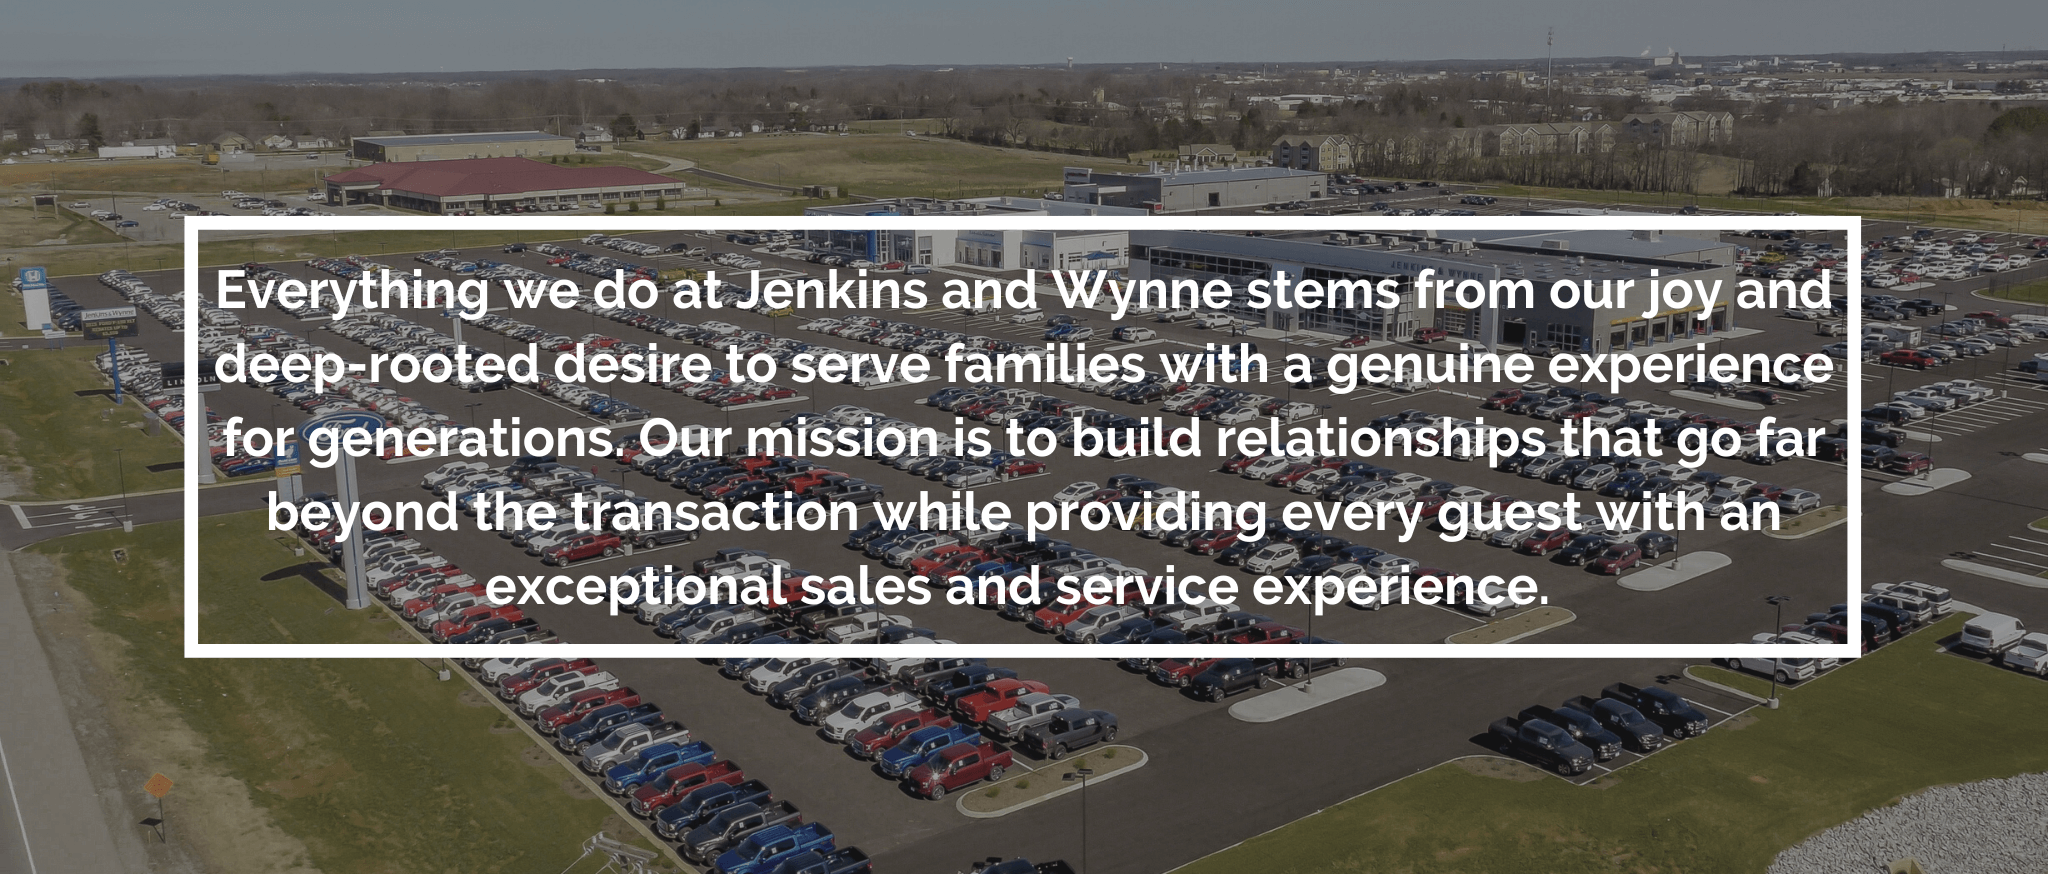 Jenkins & Wynne Mission Statement